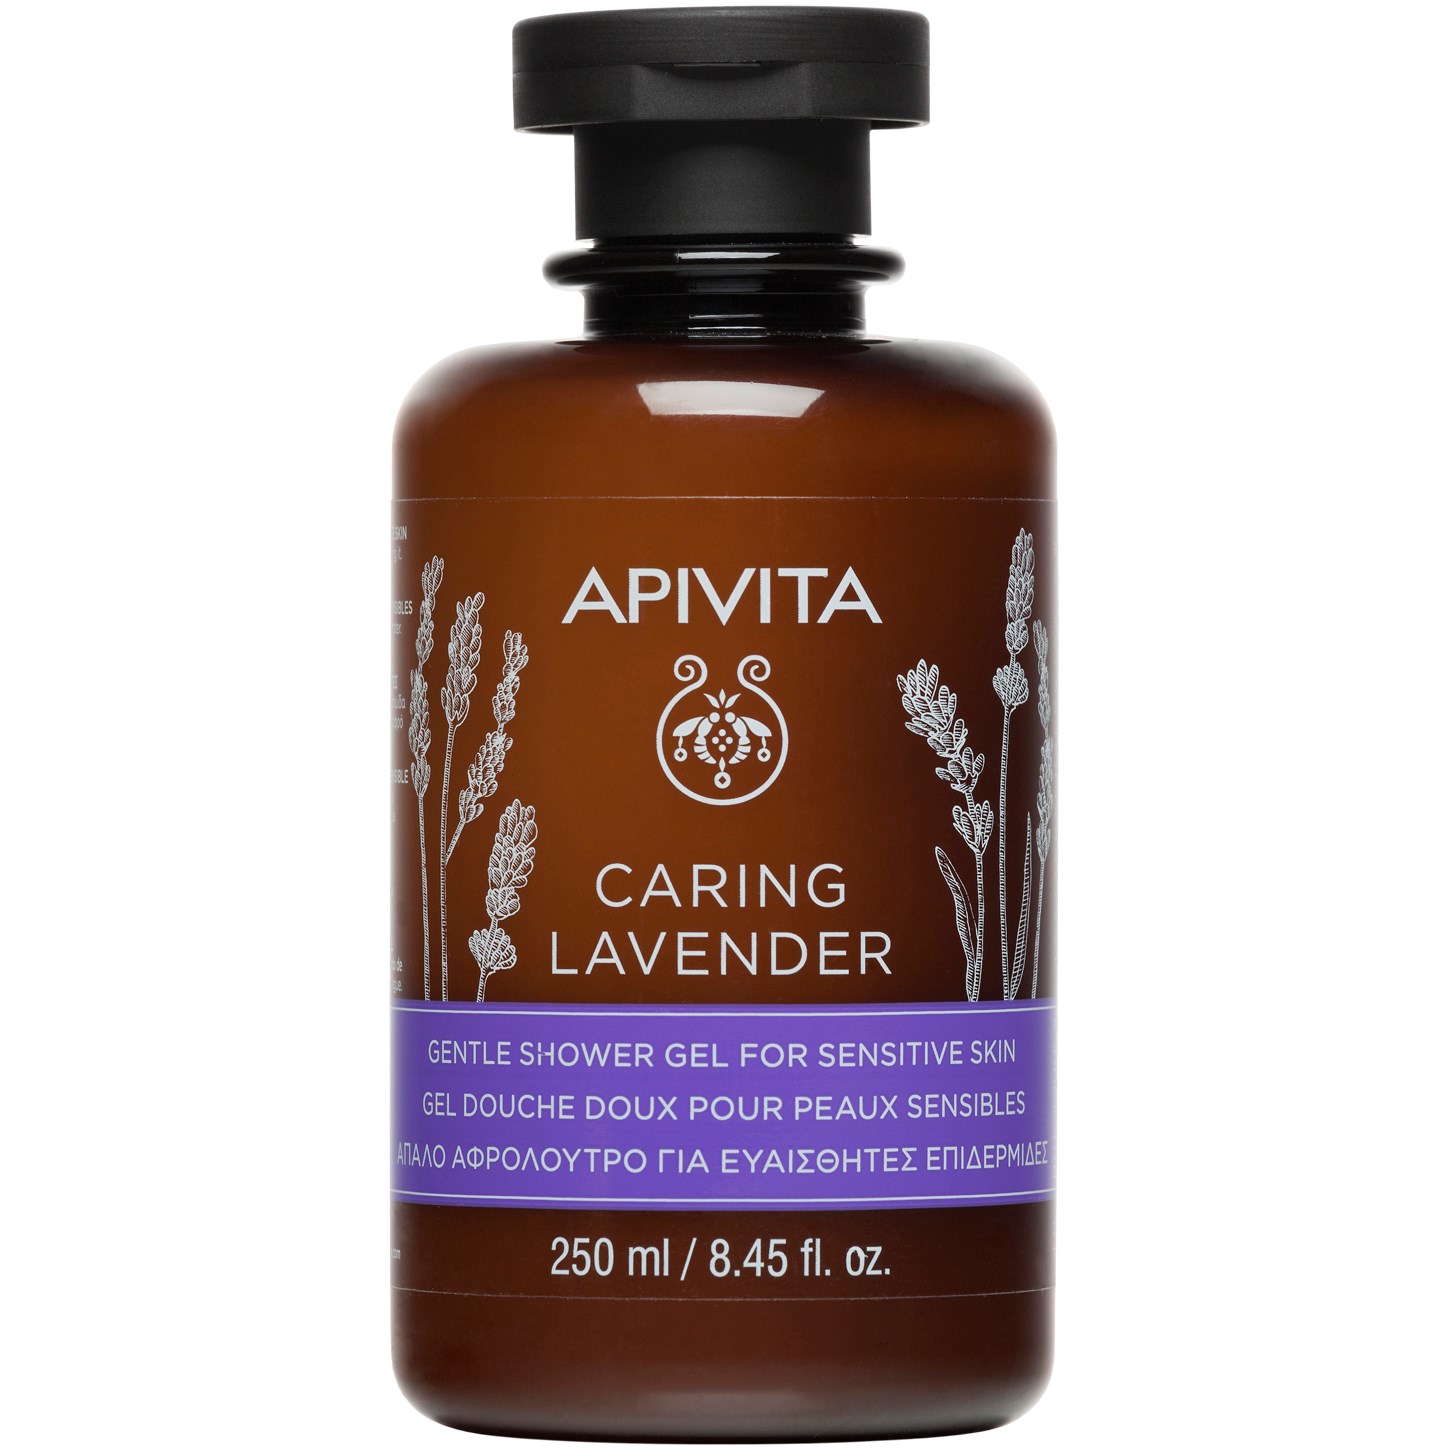 Bilde av Apivita Caring Lavender Gentle Shower Gel For Sensitive Skin With Lav